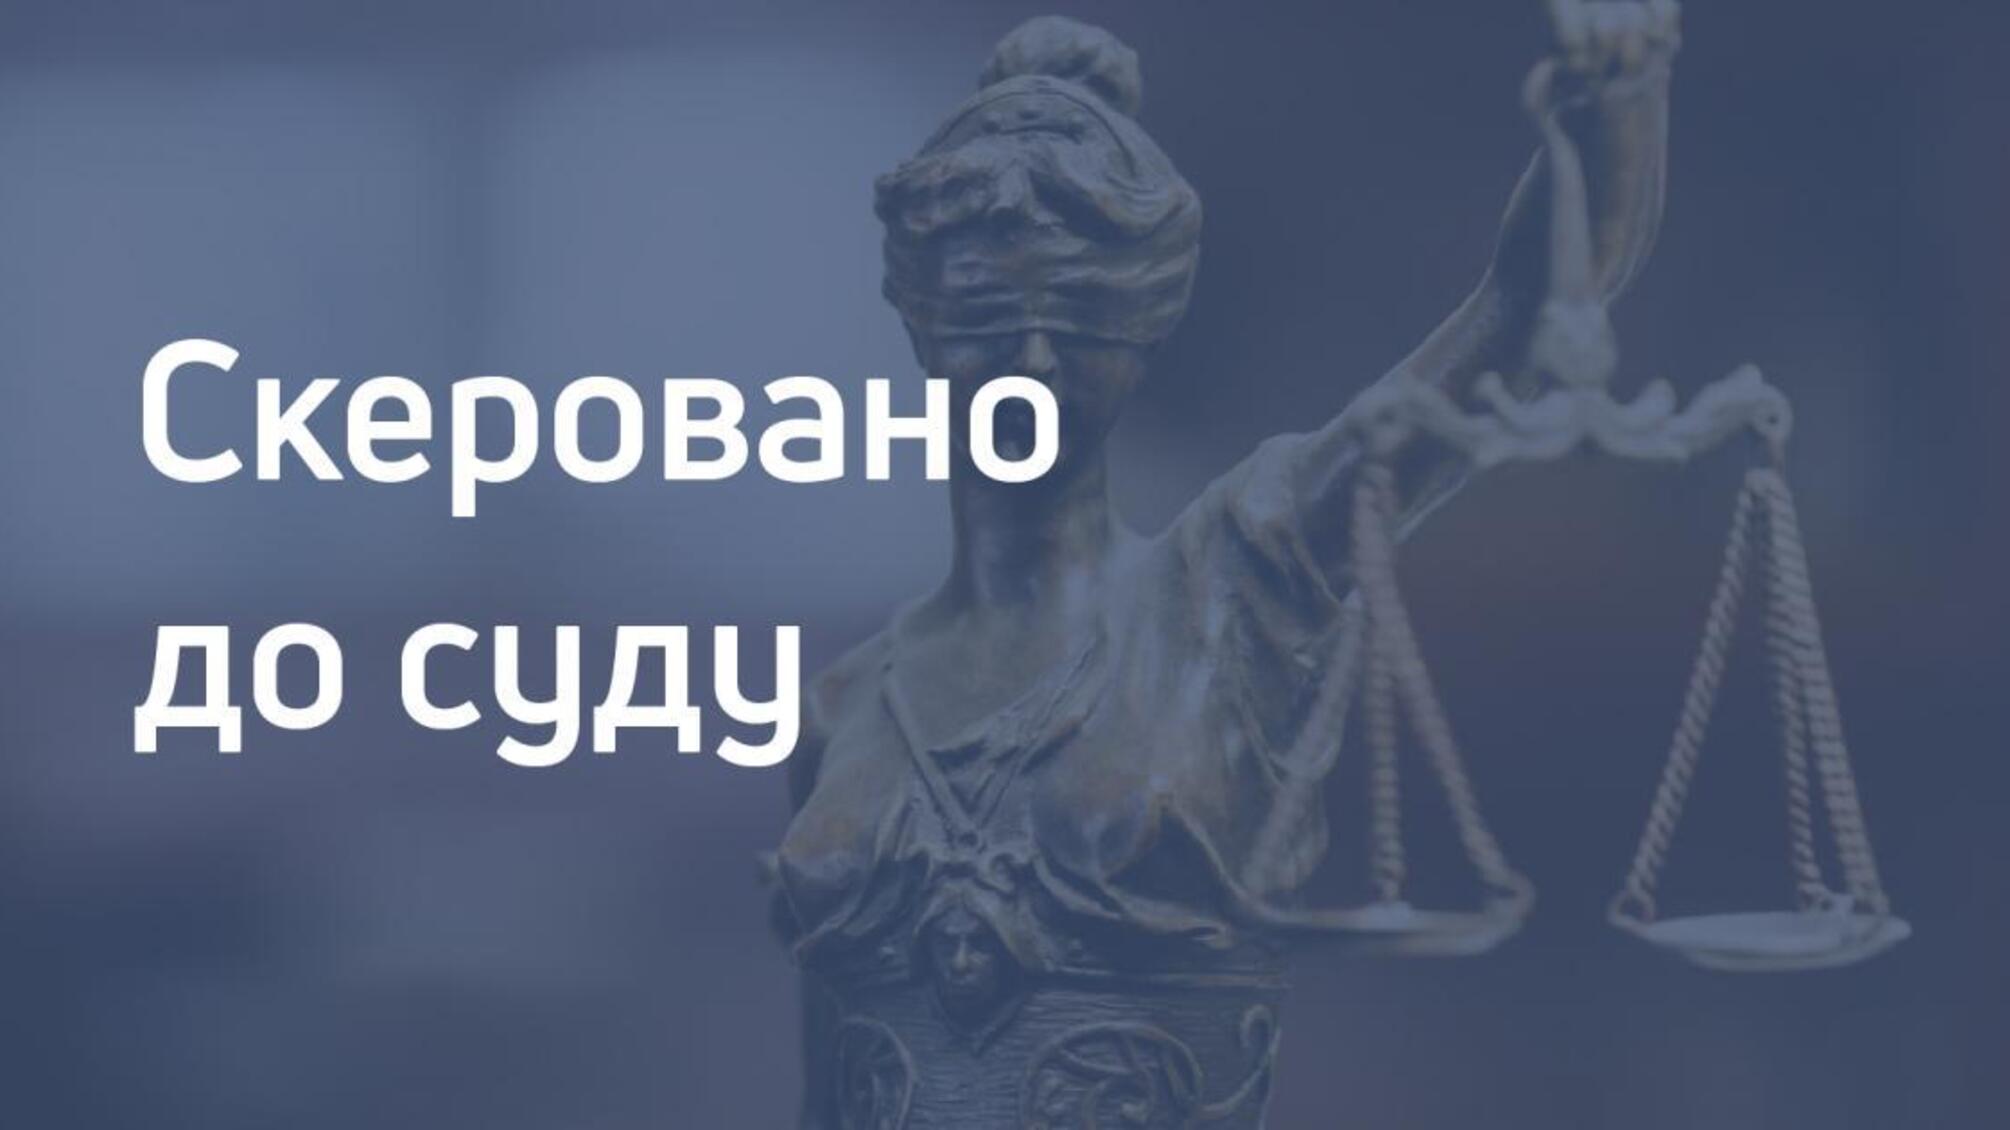 За незаконну «прослушку» відповість у суді працівник Державної судової адміністрації України